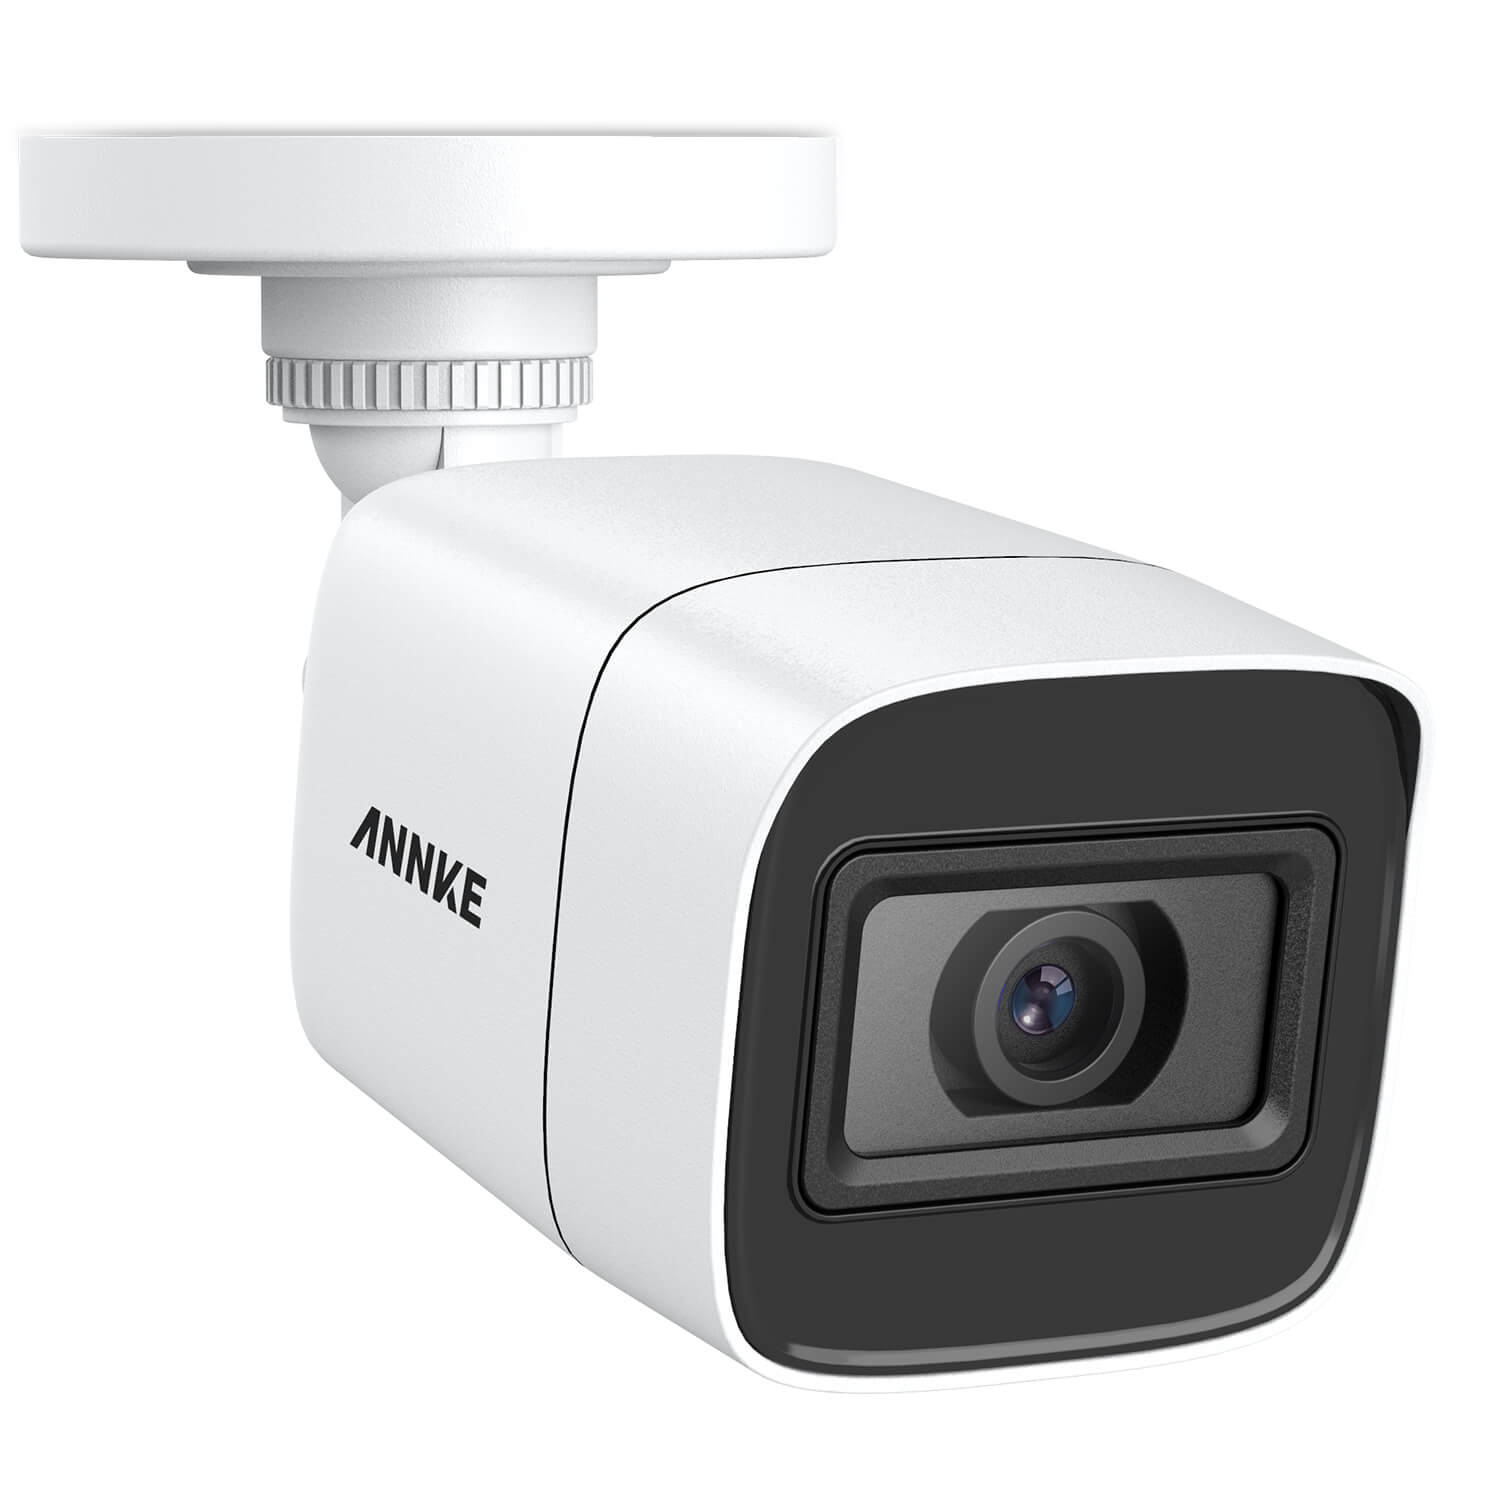 E800 Kit de surveillance filaire 4K à 8 canaux avec 4 caméras - Boutique  ANNKE